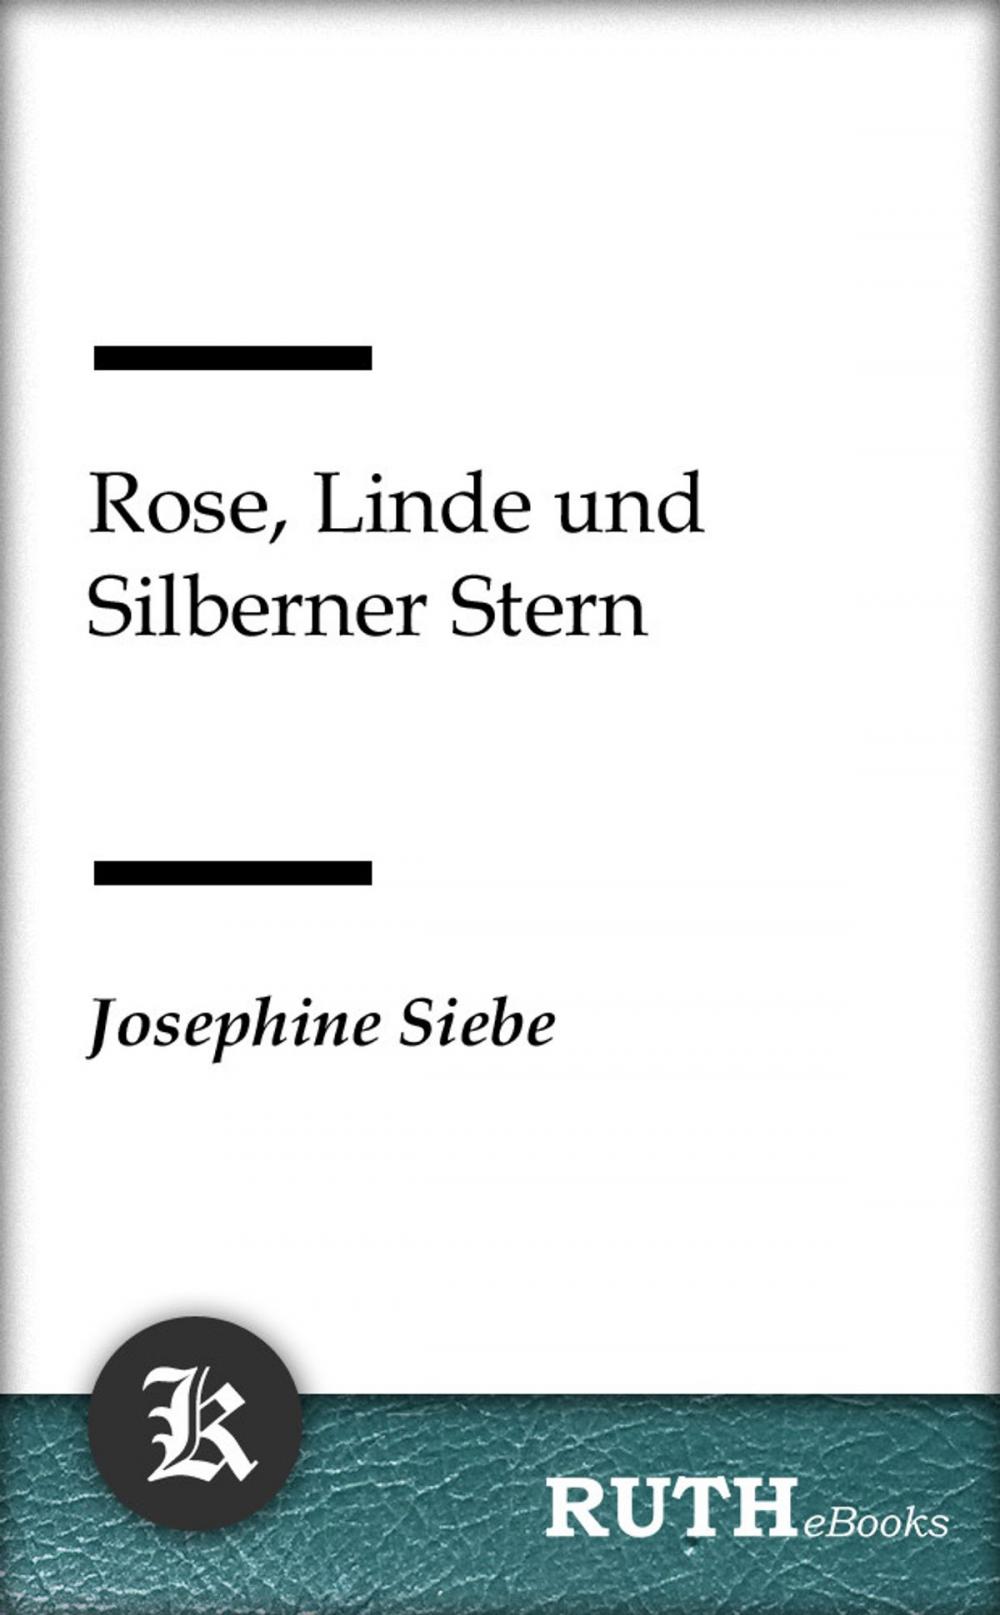 Big bigCover of Rose, Linde und Silberner Stern